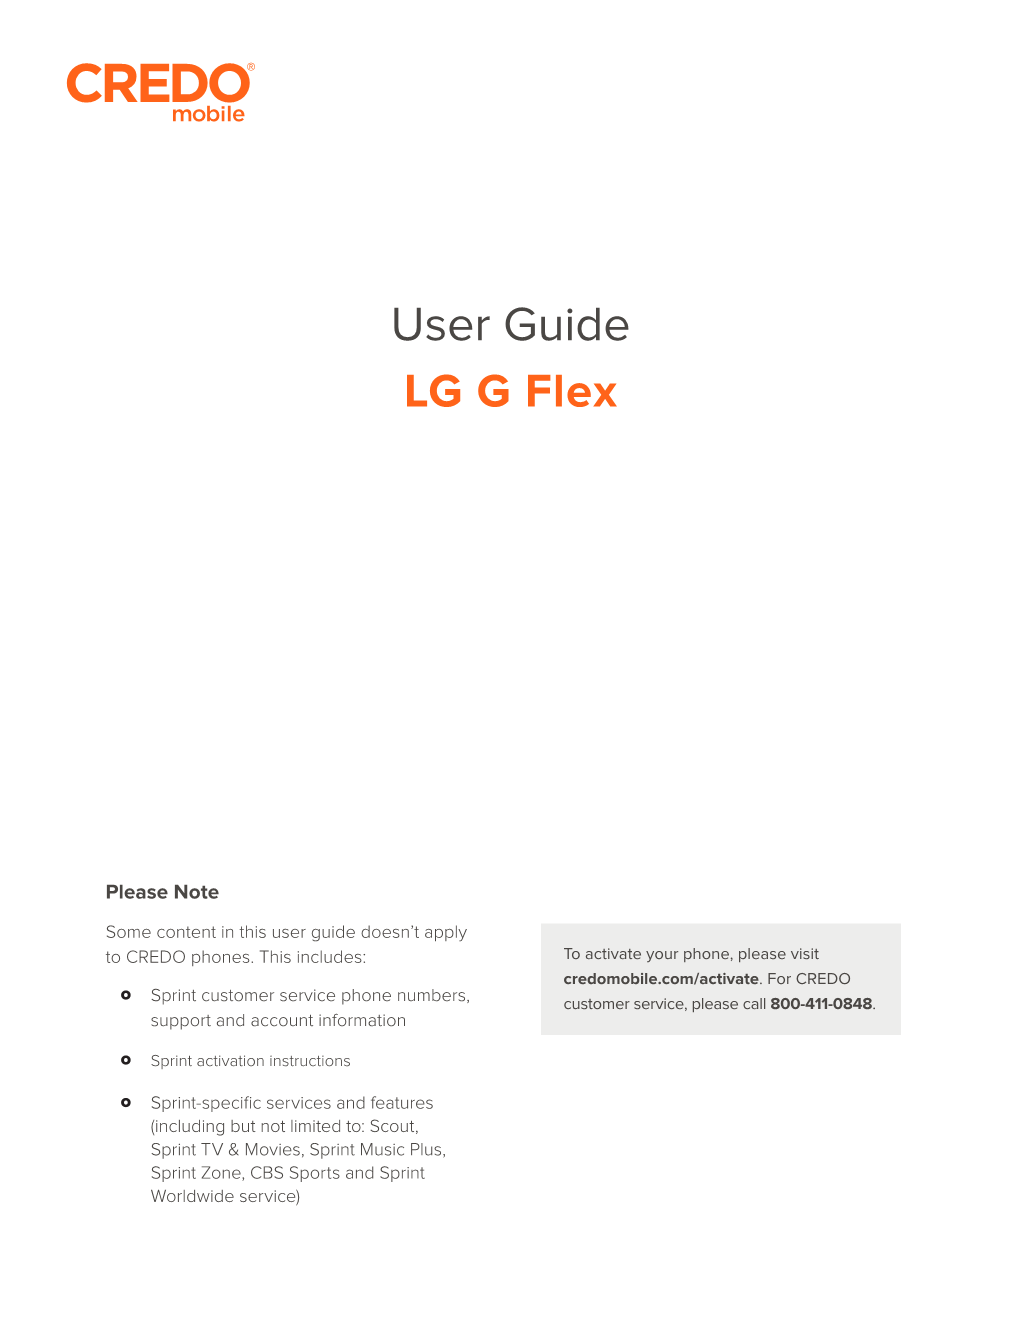 LG G Flex User Guide